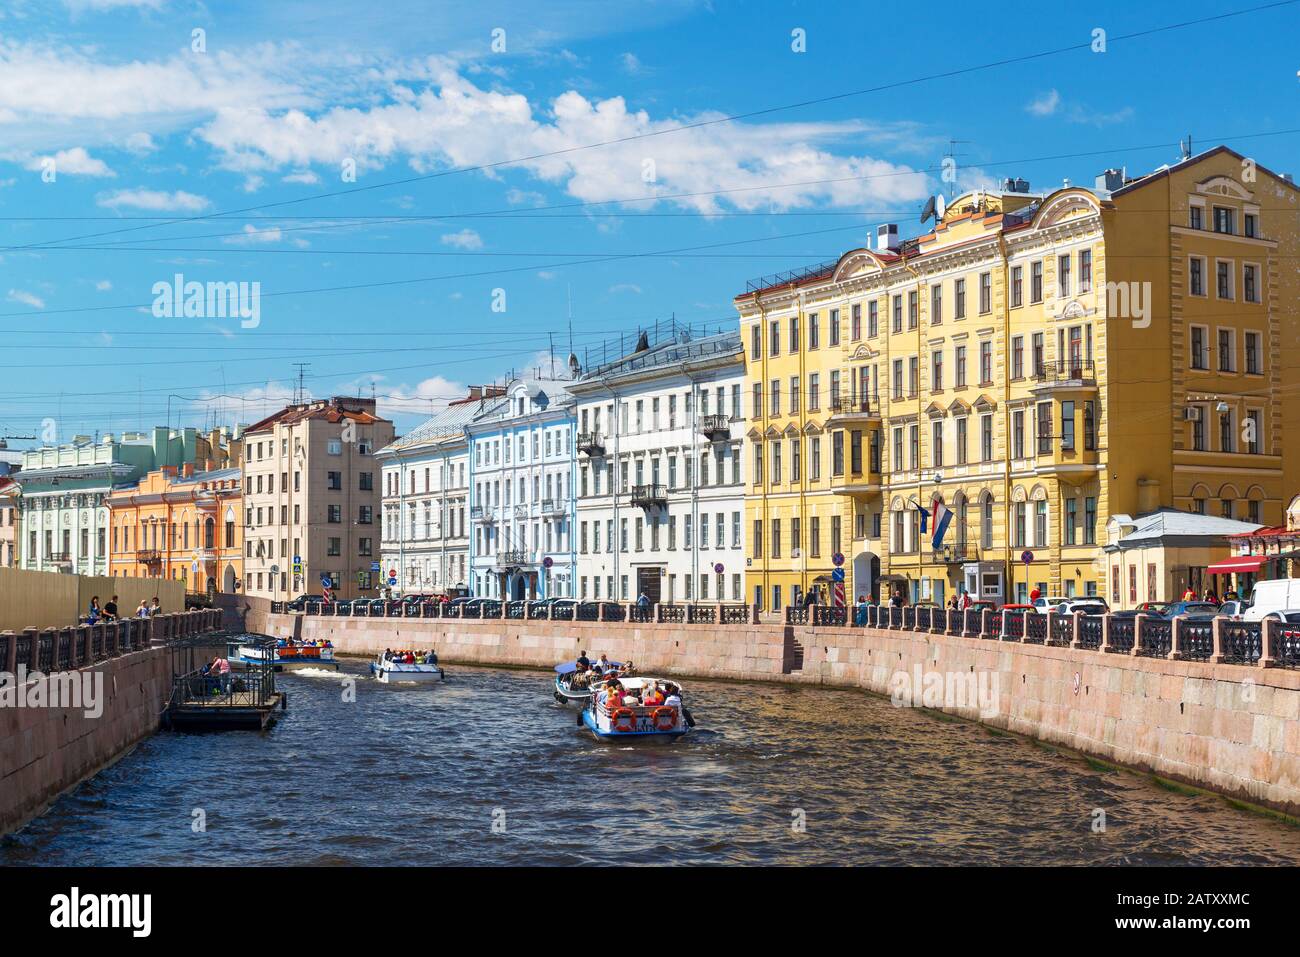 St. PETERSBURG, RUSSLAND - 14. JUNI 2014: Der Fluss Moyka mit Touristenbooten. St. Petersburg war die Hauptstadt Russlands und zieht viele Touristen an. Stockfoto